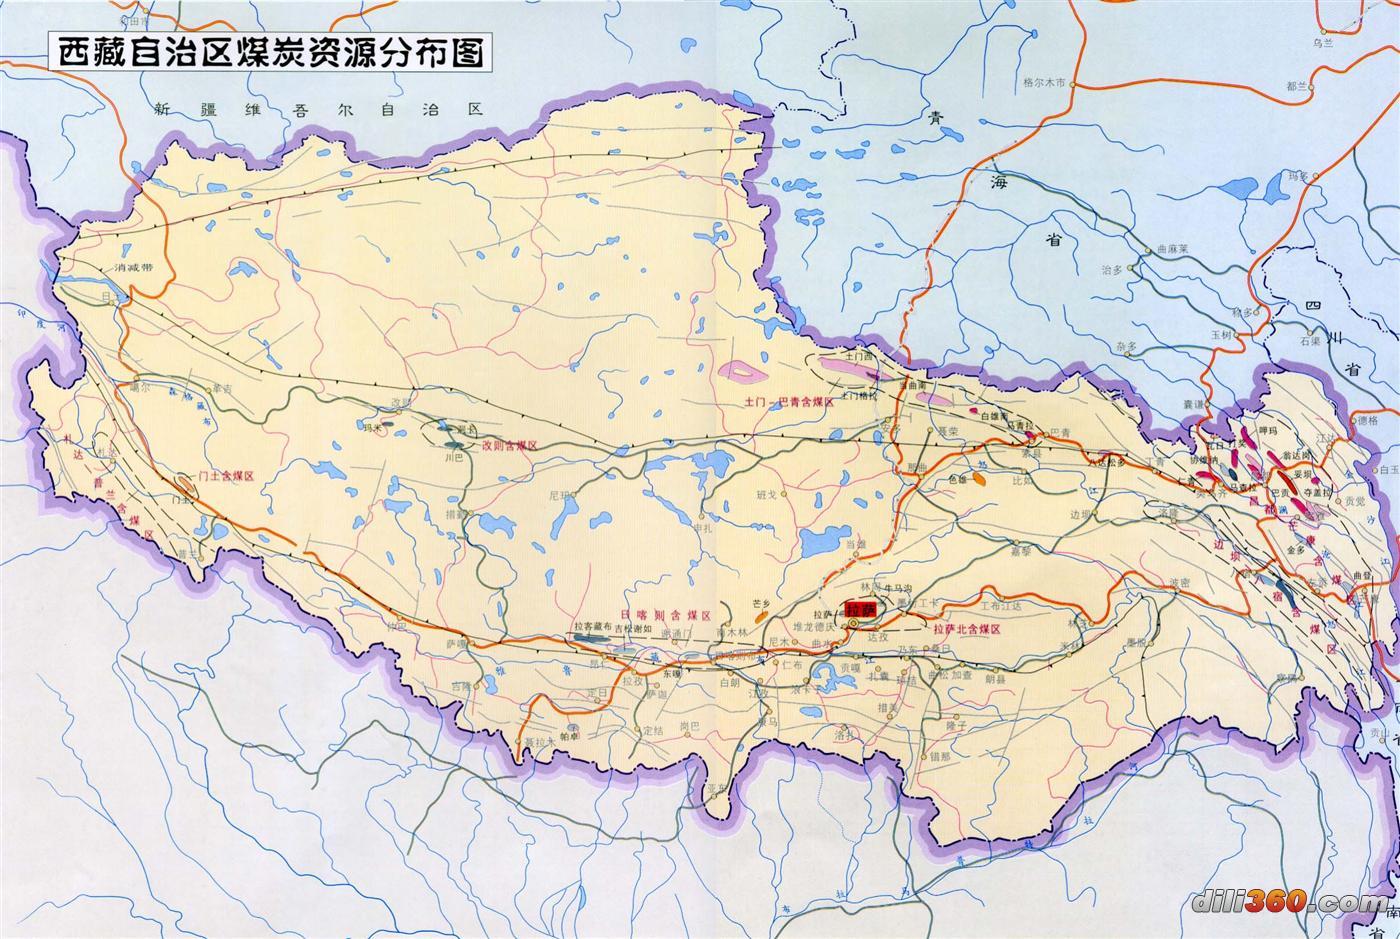 [分省图]中国煤炭资源分布图-地图专区-地图专区图片